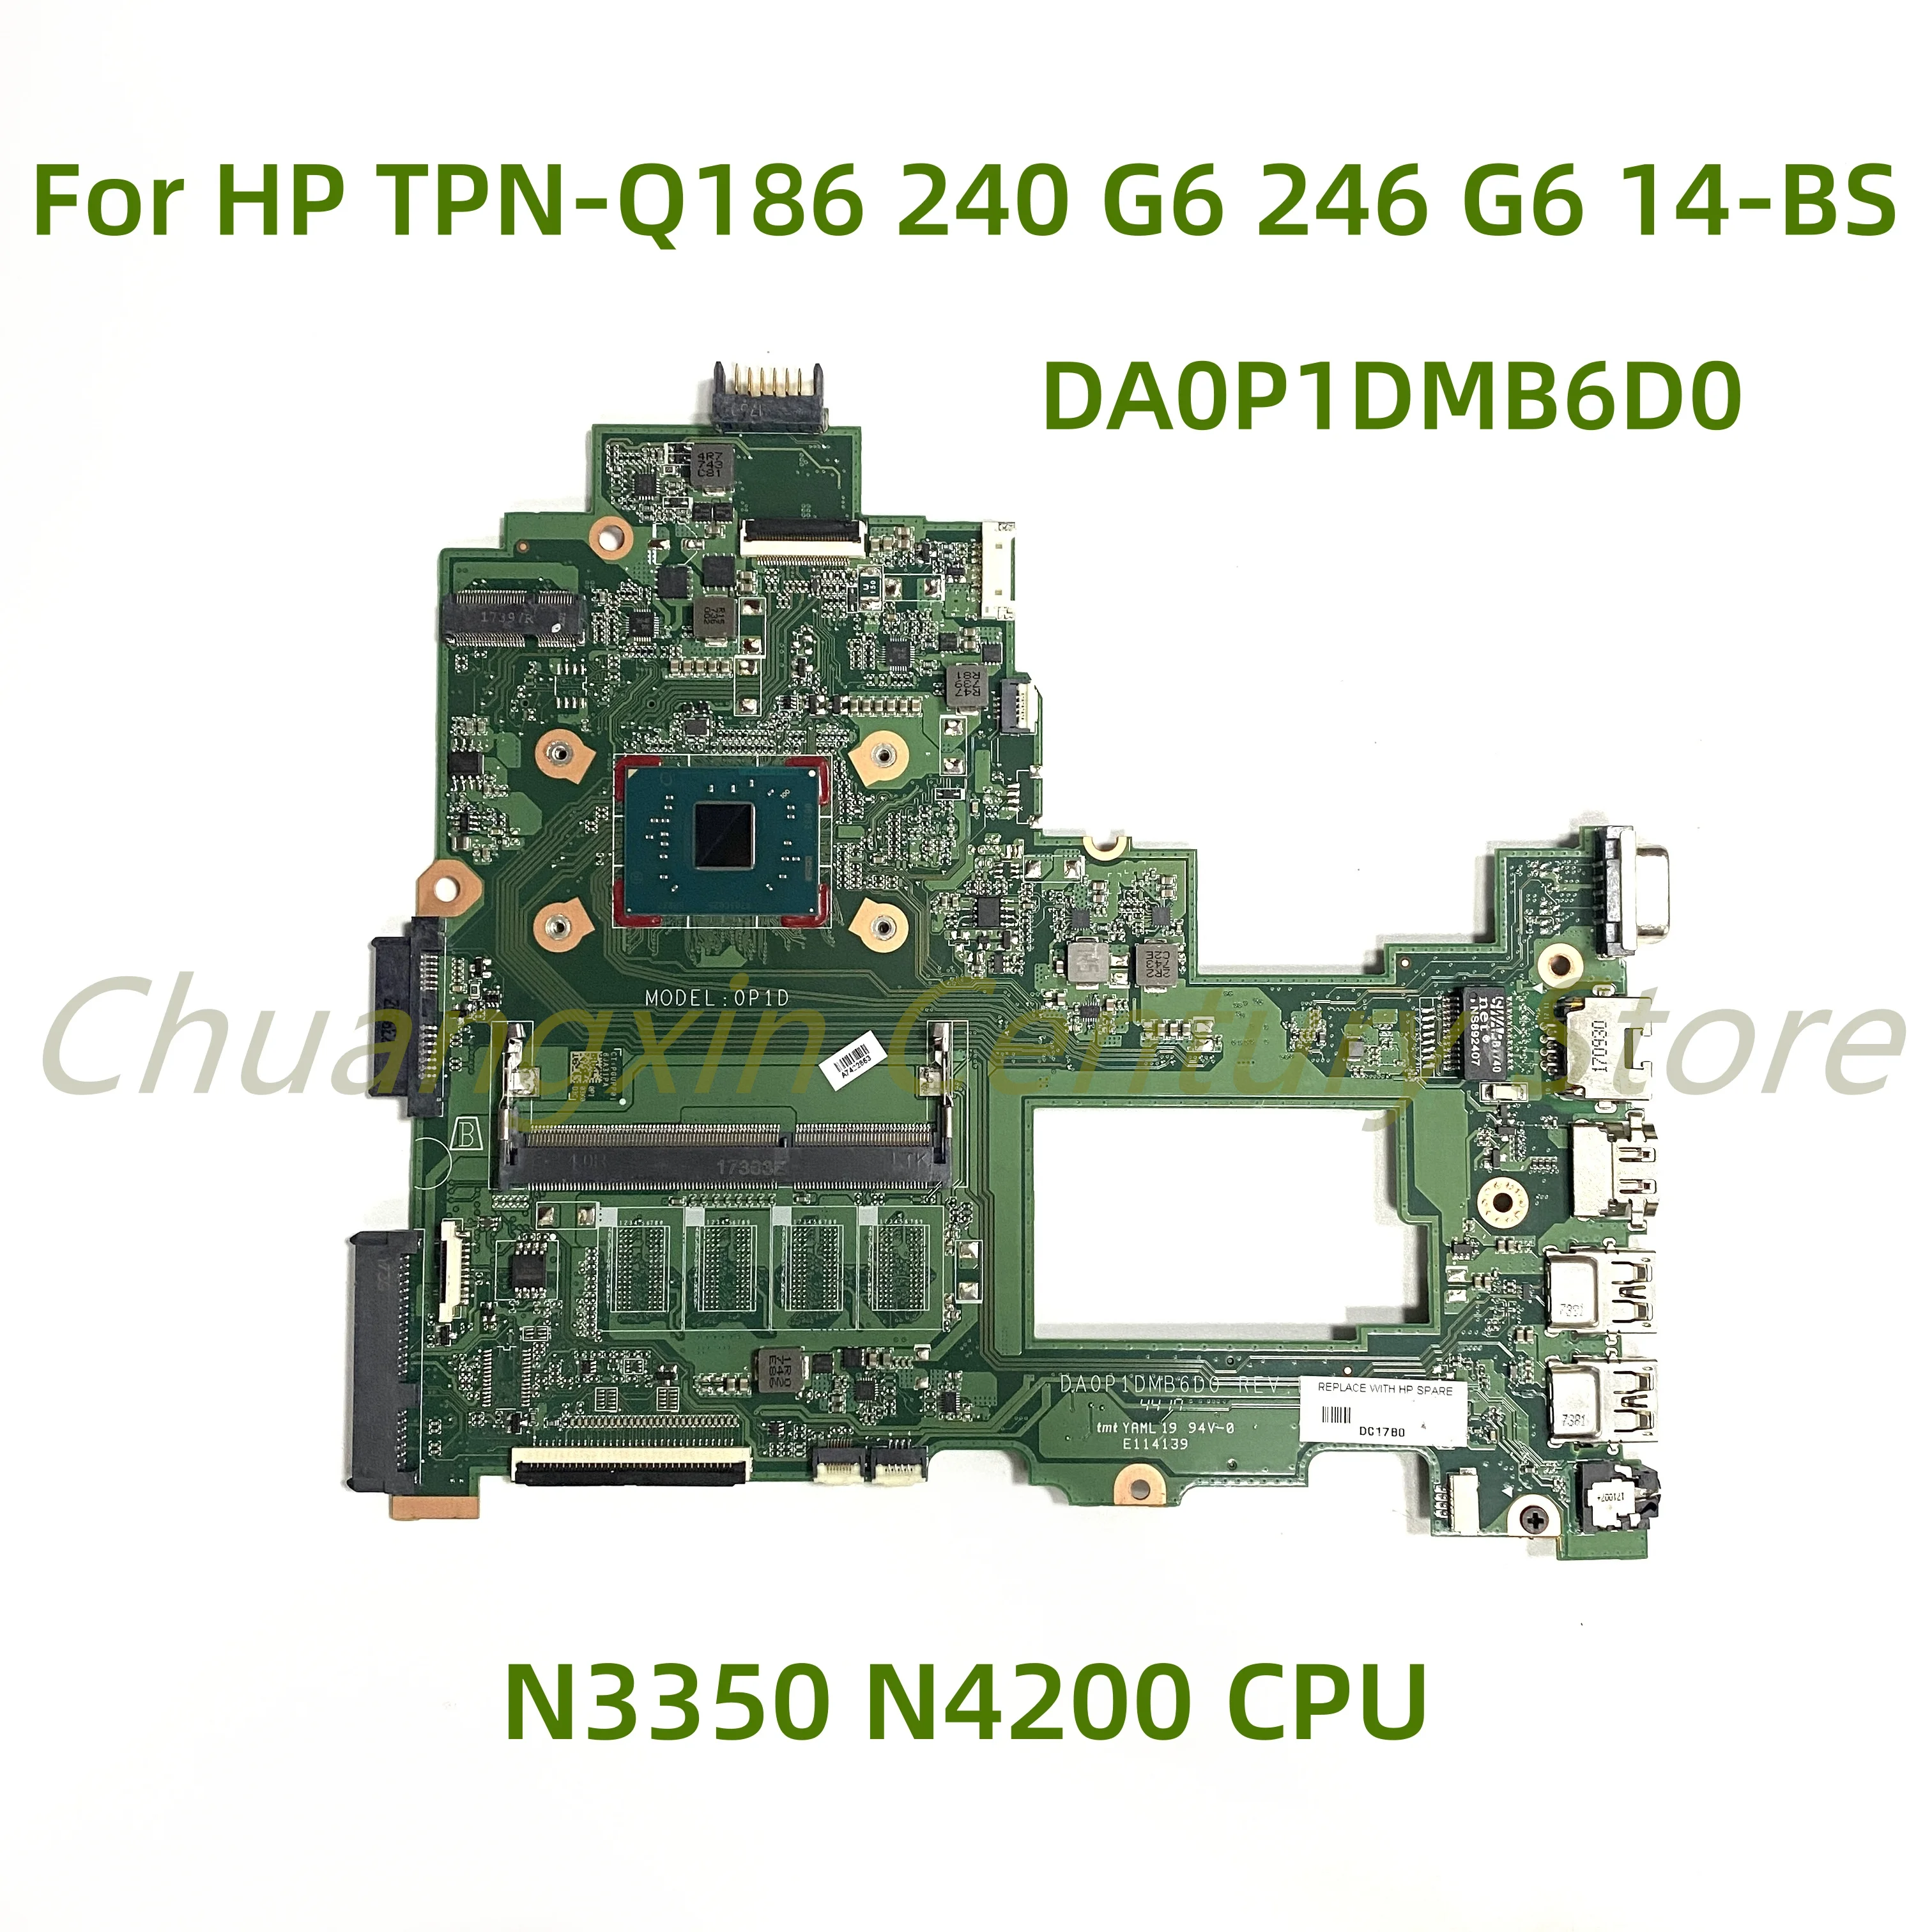 Подходит для HP TPN-Q186 240 G6 246 G6 14-BS материнская плата ноутбука DA0P1DMB6D0 с процессором N3350 N4200 100% Протестирована, полностью работает